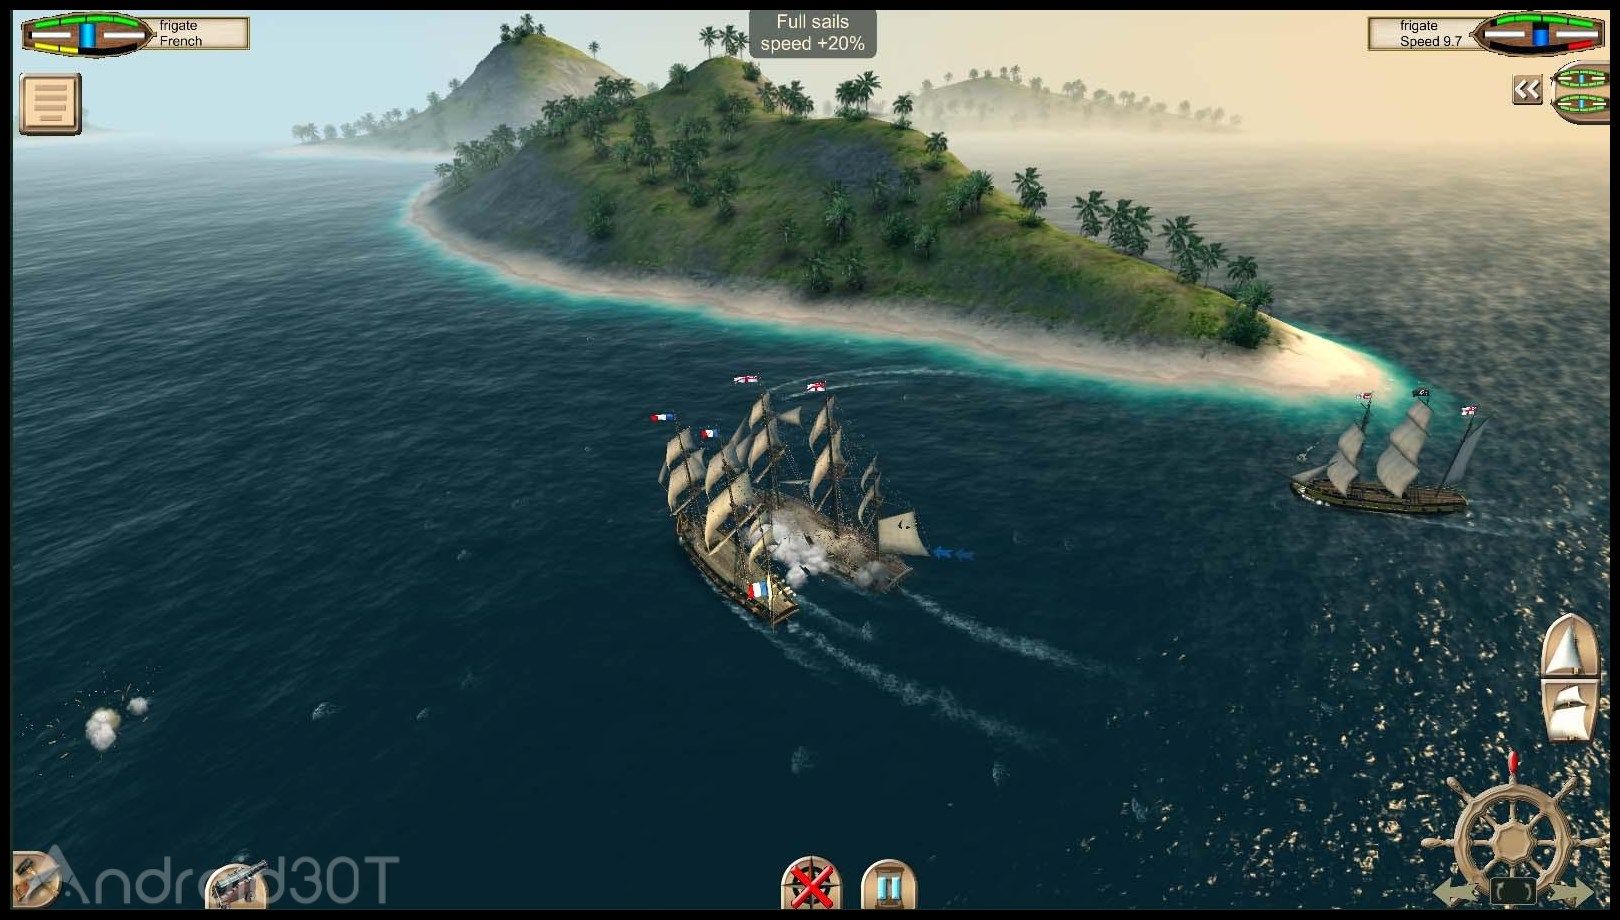 دانلود The Pirate: Caribbean Hunt 10.0 – بازی دزدان دریایی کارائیب اندروید